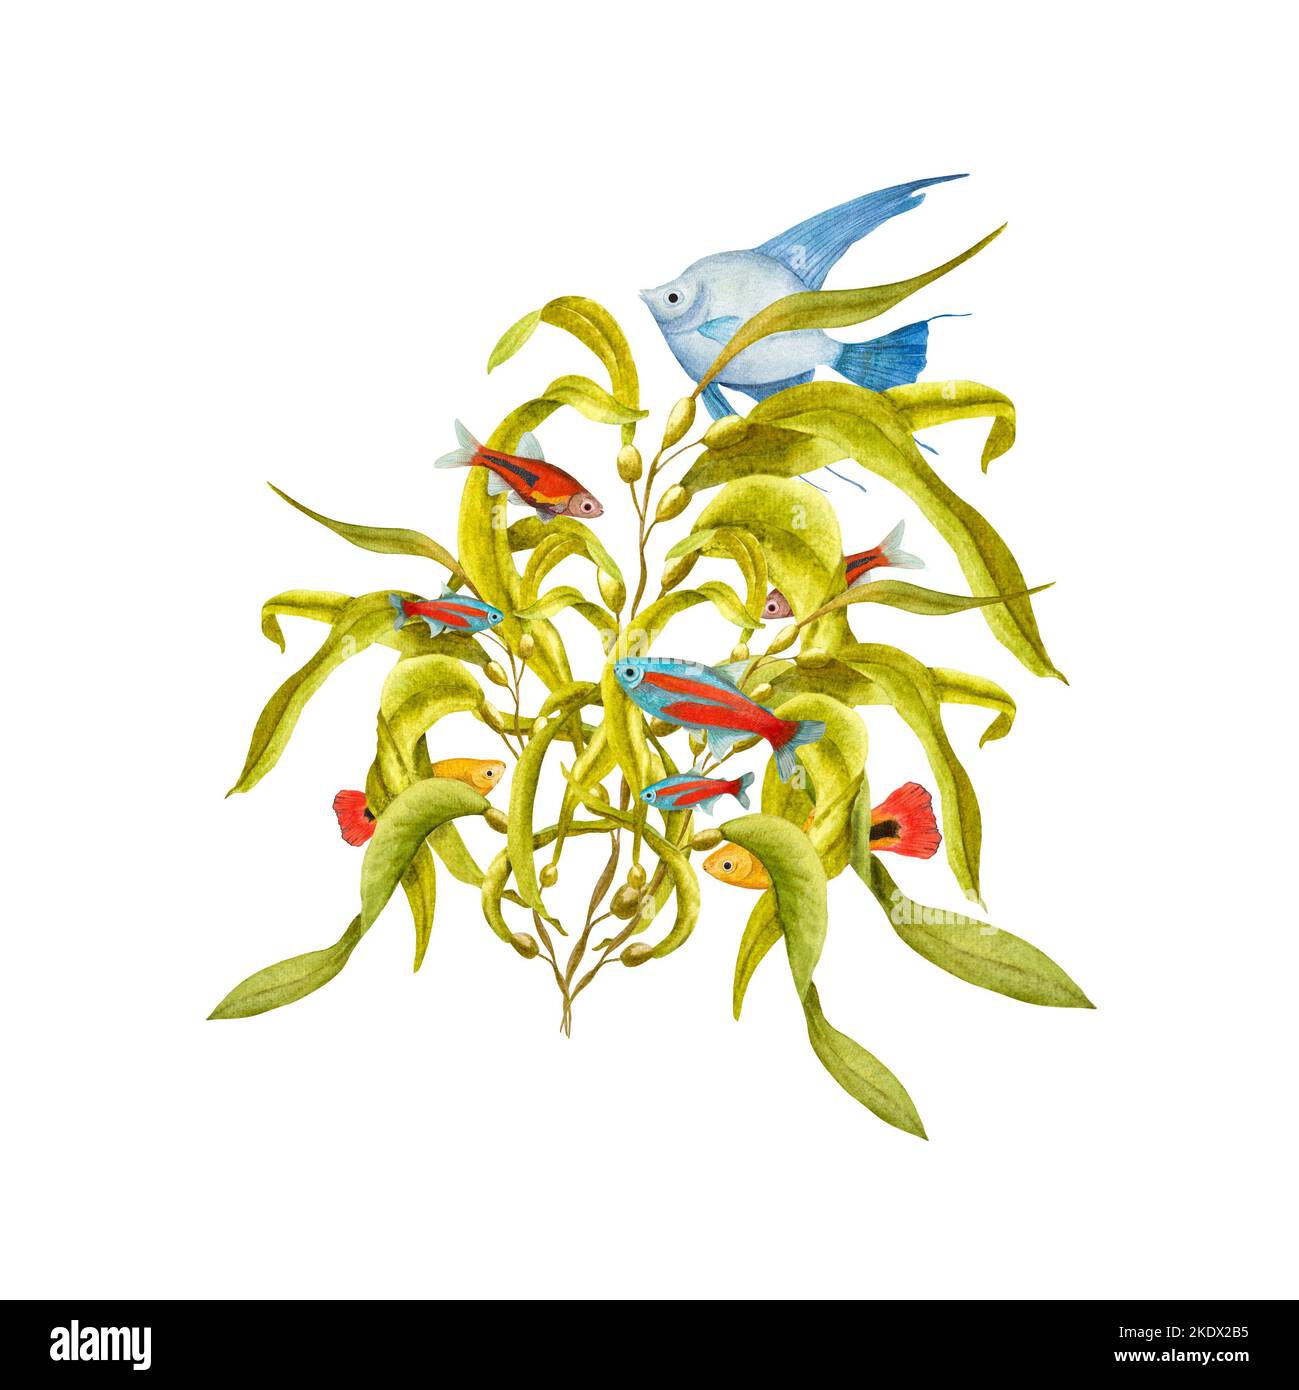 Aquarell-Illustration einer Reihe von Meeresfauna isoliert auf weißem Hintergrund. Angelfische, Seesterne, Muscheln, Korallen, Seepferd, Algen, Pflanzen, Wasser Stockfoto